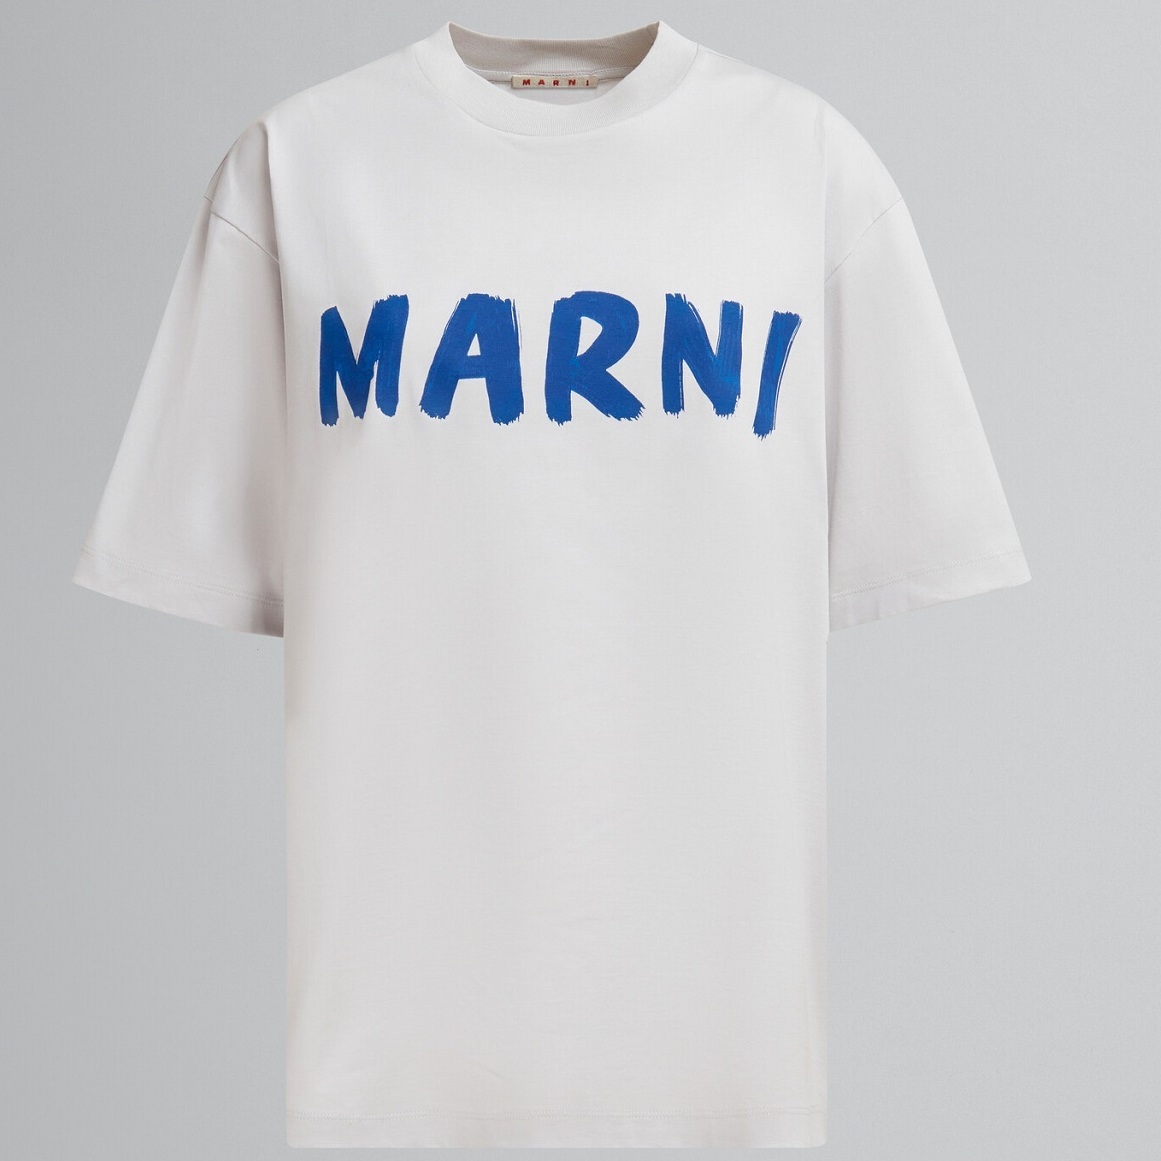 夏はこんな楽しいTシャツが着たい！ 『マルニ』のおすすめ新作3選